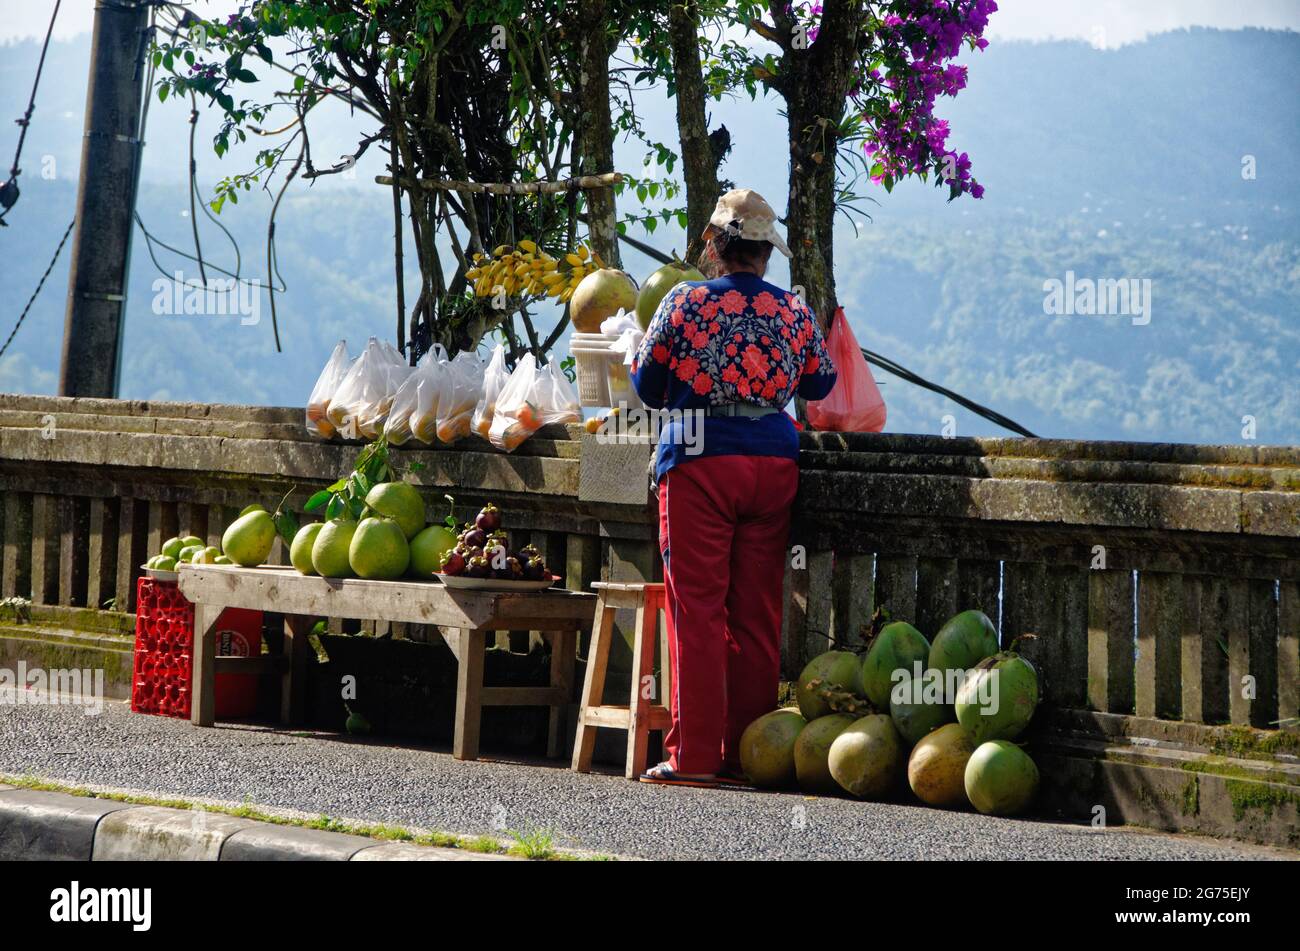 Vendeurs de fruits avec melons et boissons rafraîchissantes au point d'observation du mont Batur, Bali, Indonésie Banque D'Images